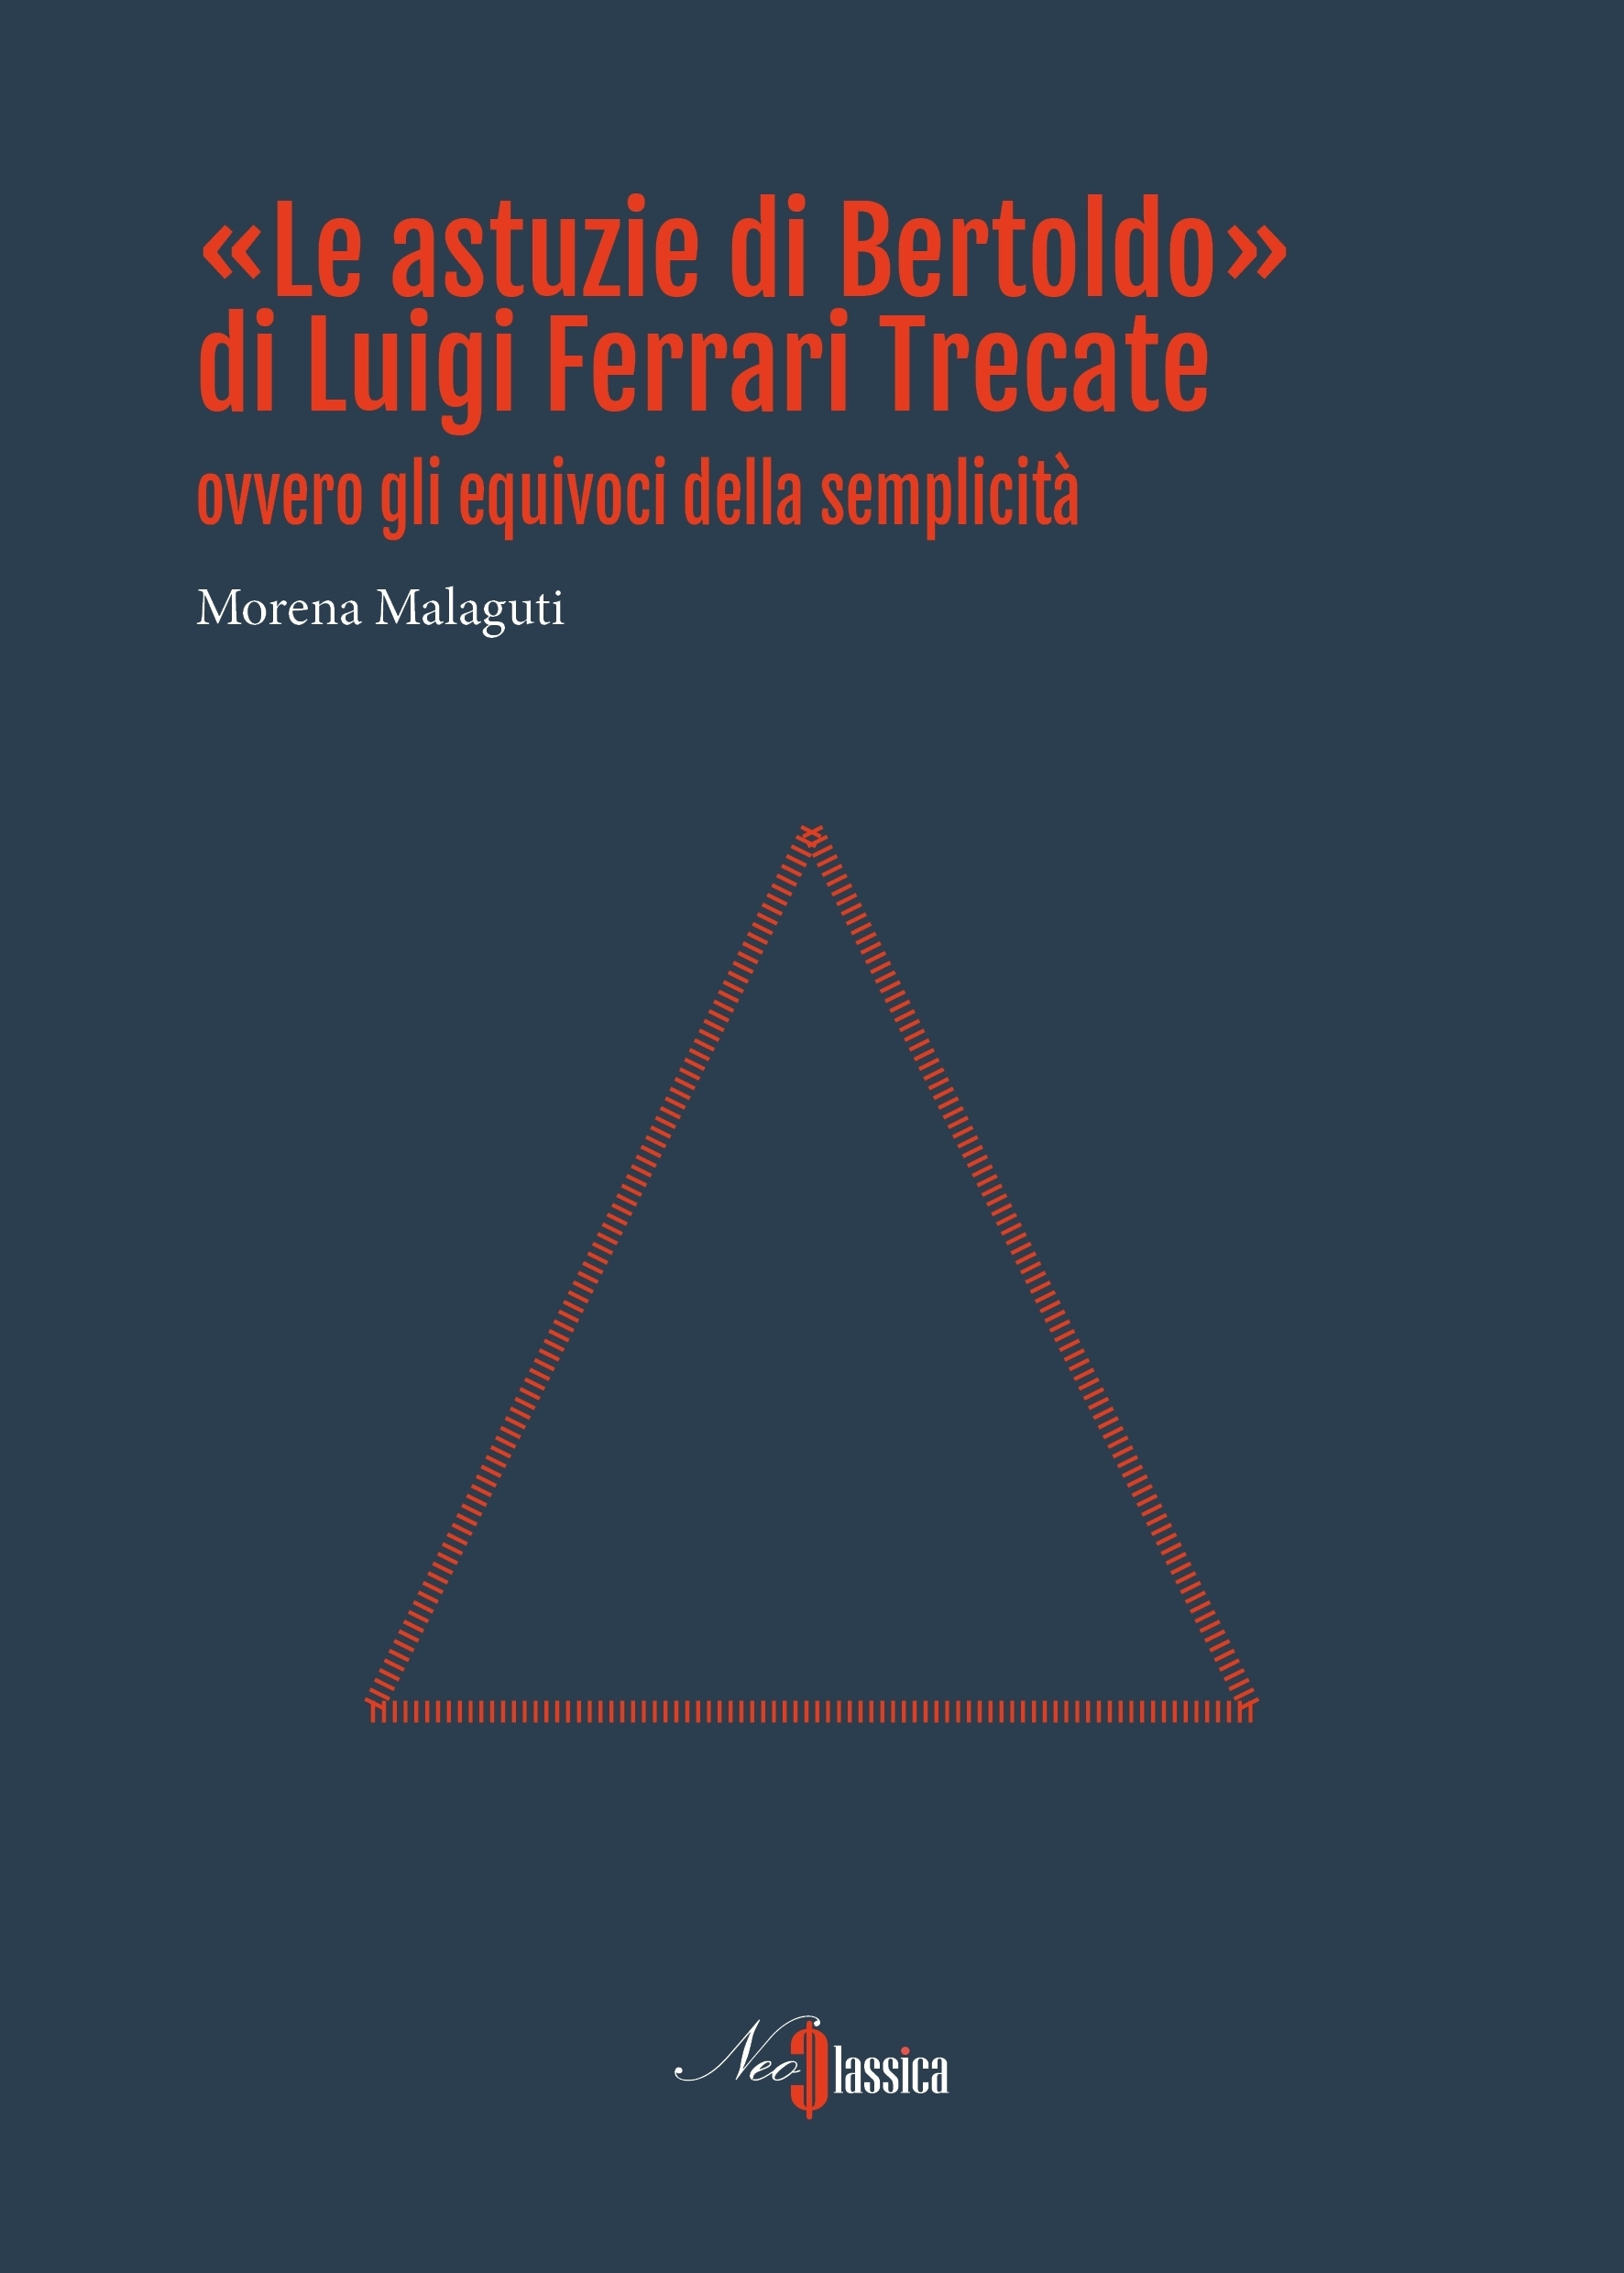 Luigi Ferrari Trecate